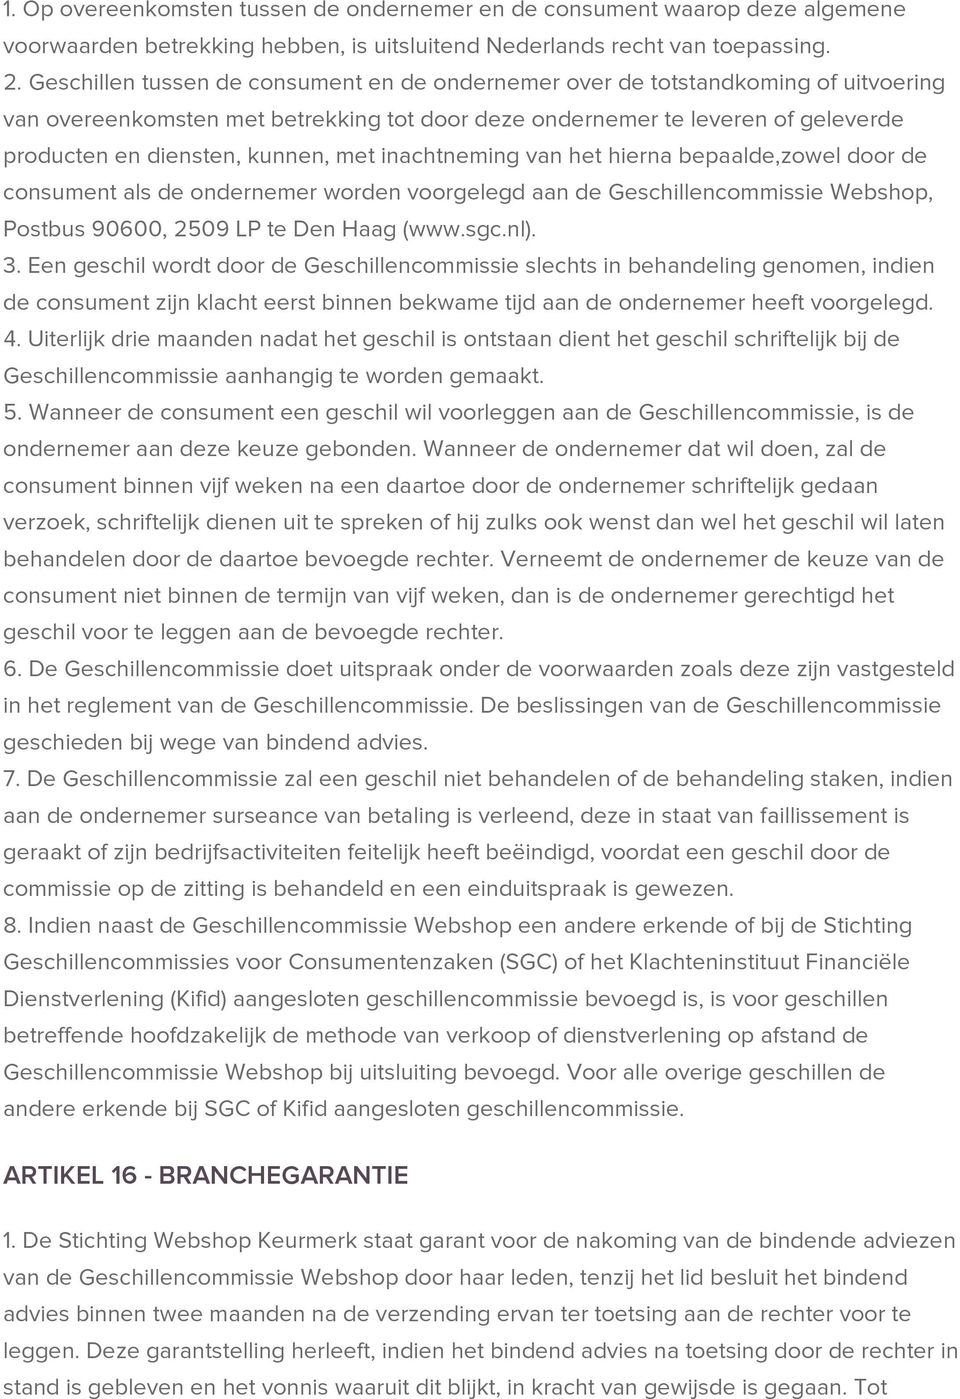 met inachtneming van het hierna bepaalde,zowel door de consument als de ondernemer worden voorgelegd aan de Geschillencommissie Webshop, Postbus 90600, 2509 LP te Den Haag (www.sgc.nl). 3.